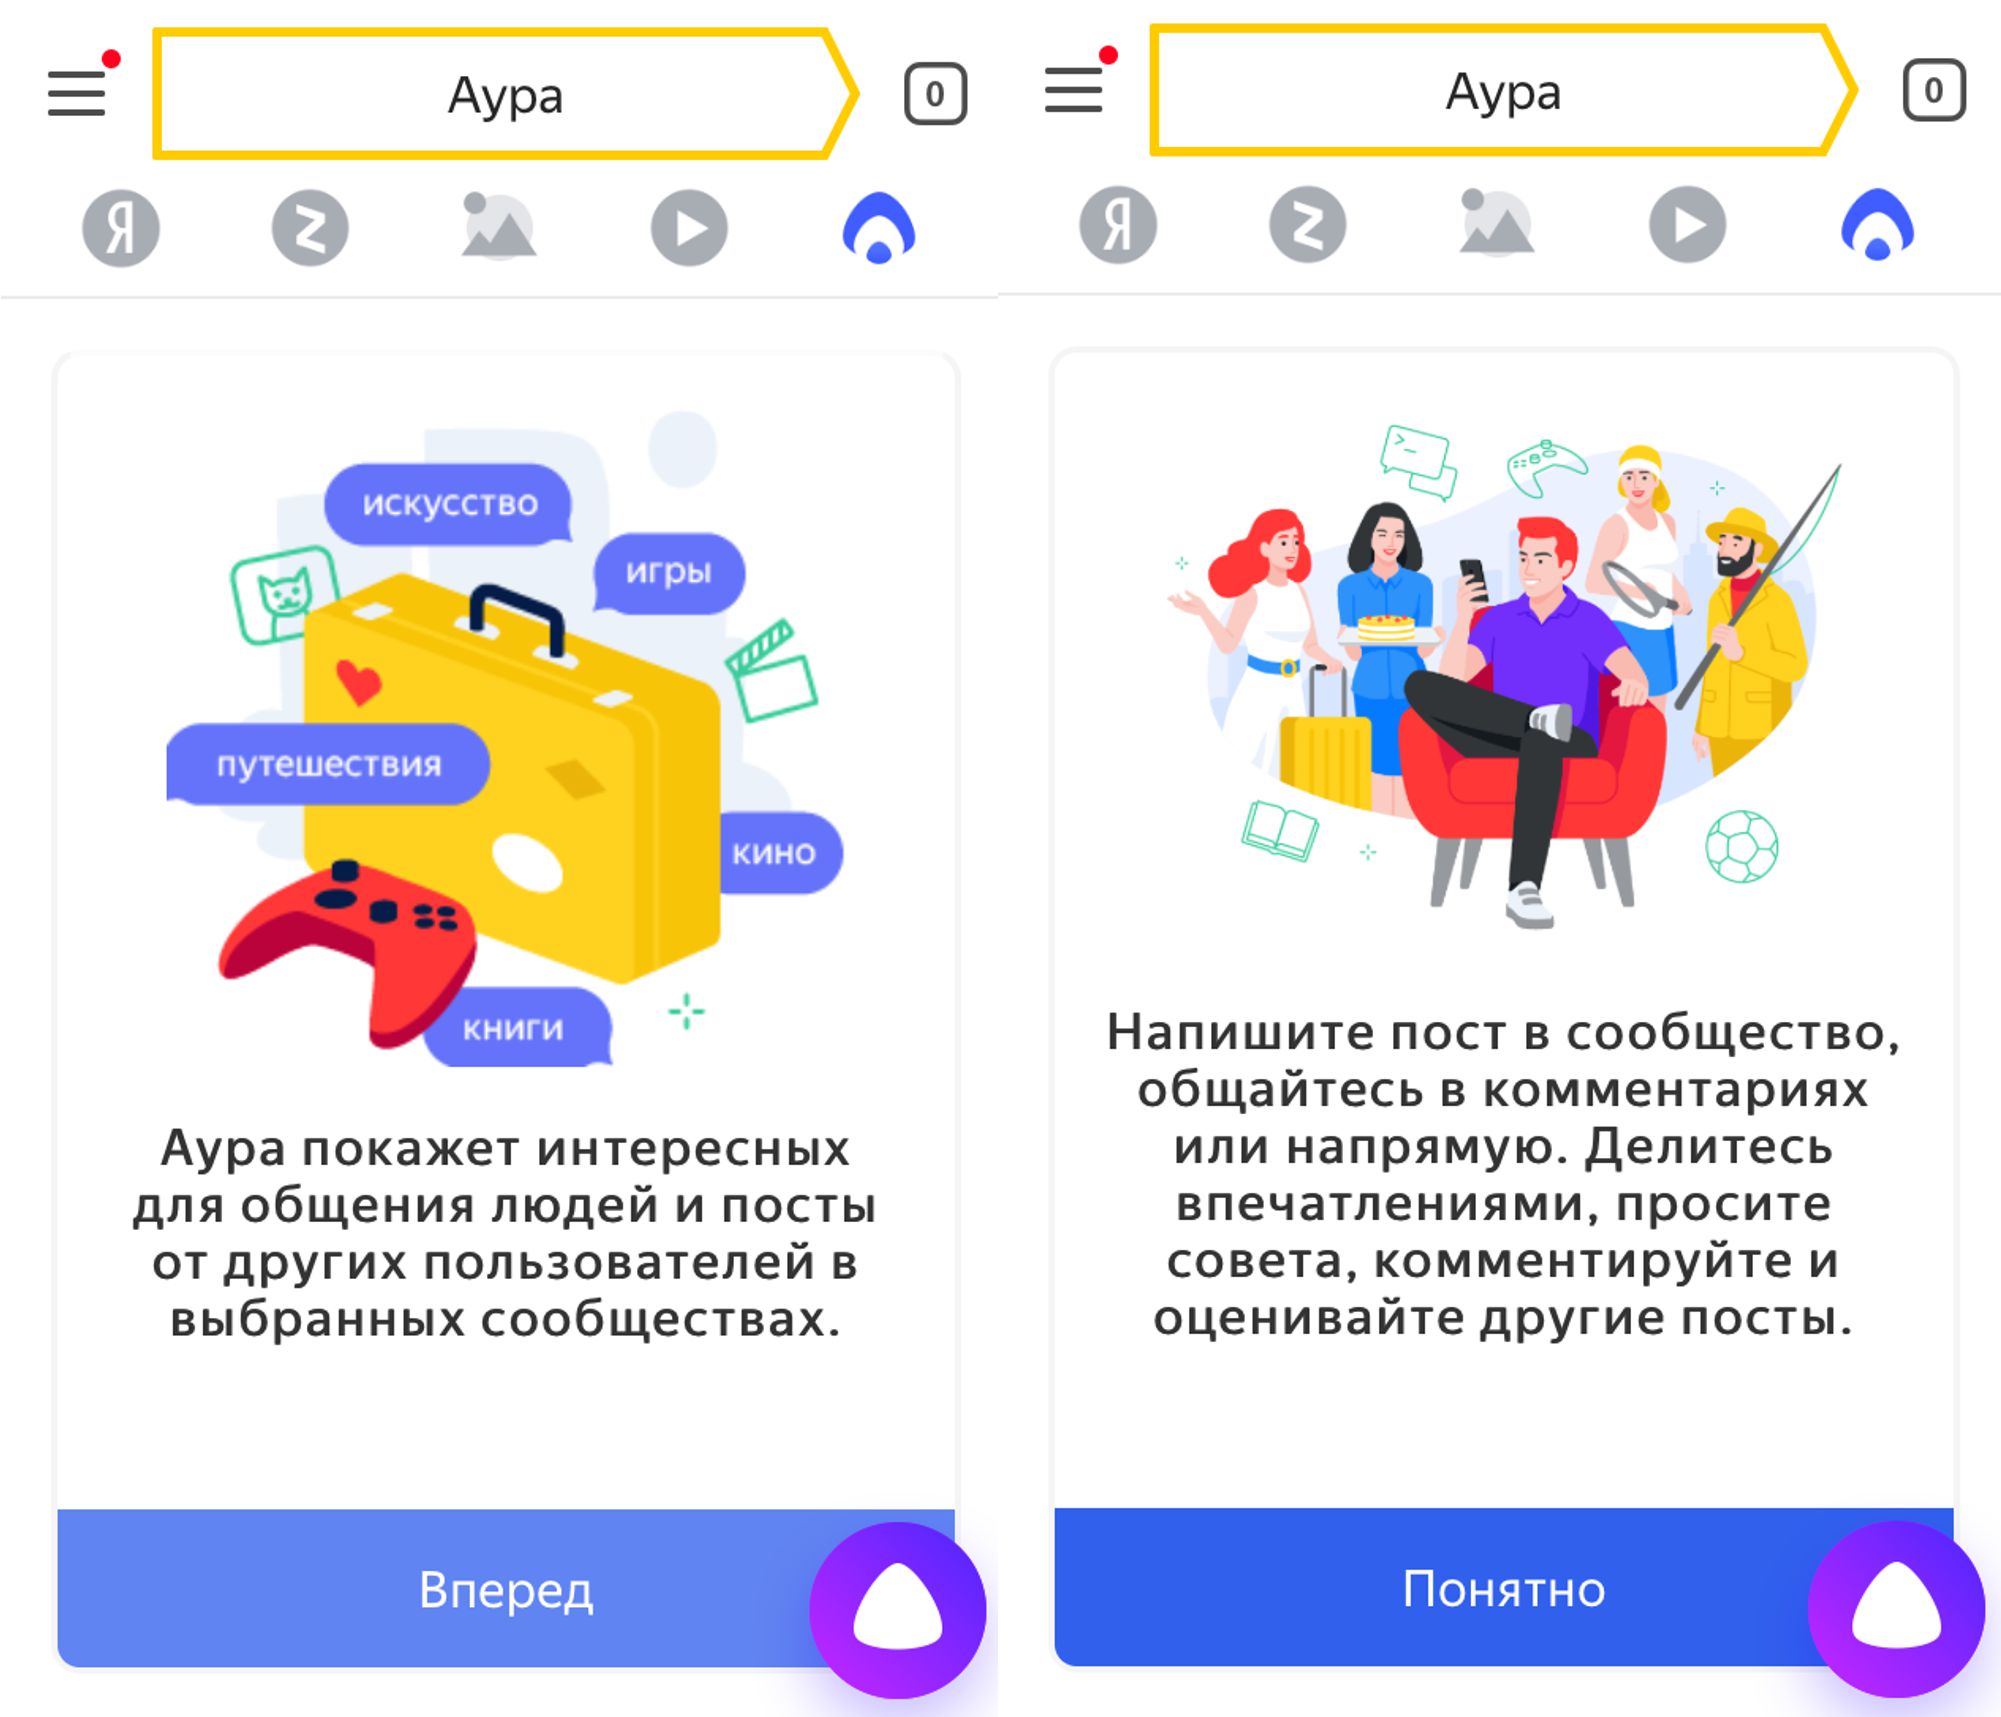 «Аура» от Яндекс временно прекратила регистрацию новых пользователей.